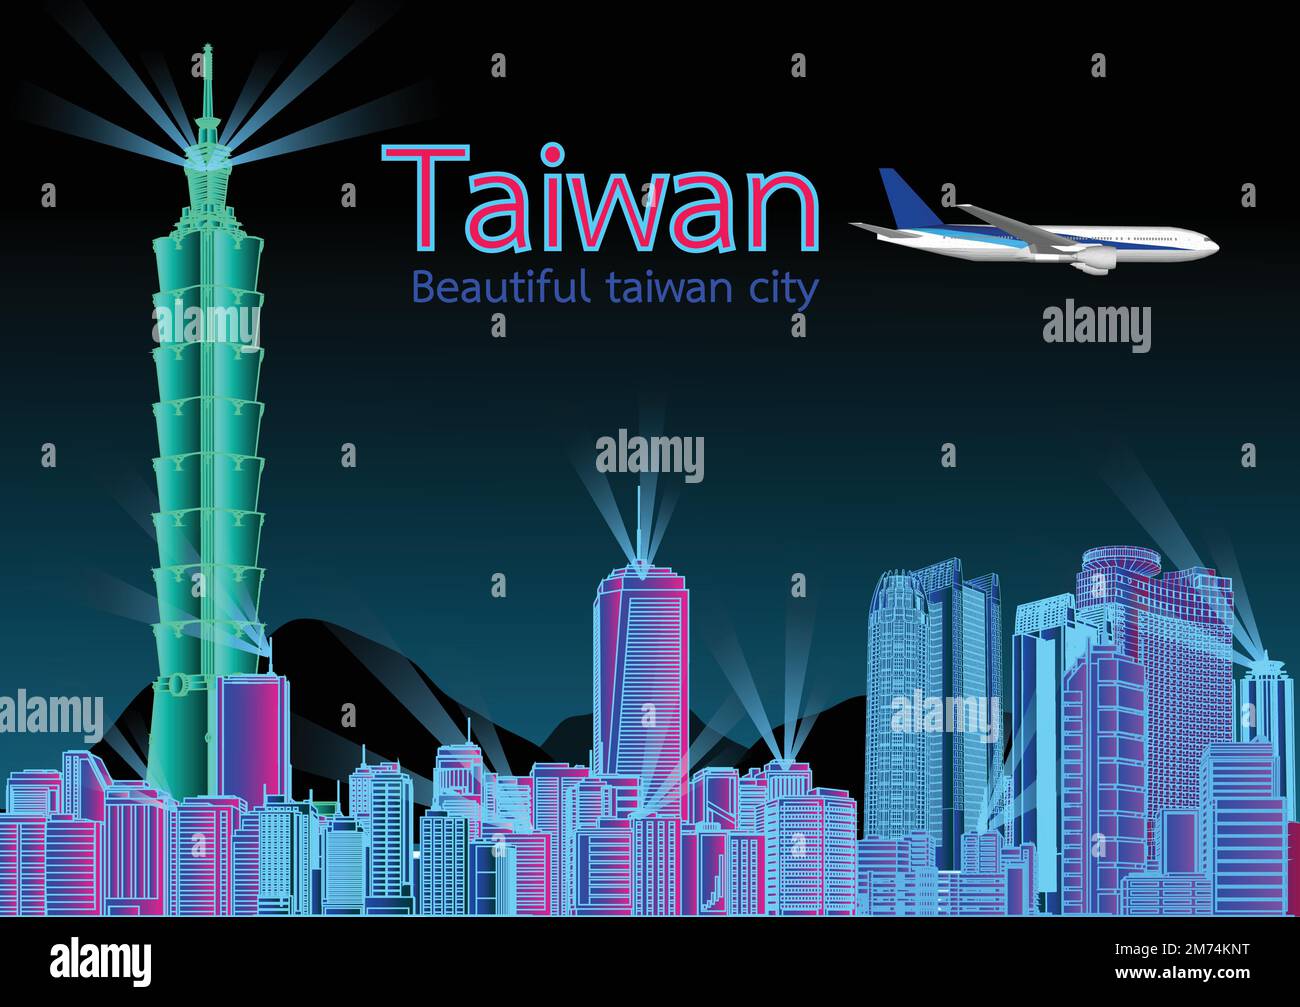 Reisen Sie Asiens Wahrzeichen Stadt Taiwan Taipei auf blauem Hintergrund mit Flugzeug und Segelboot, Tour China mit Panorama populären Hauptstadt, Origami Papier ar Stock Vektor